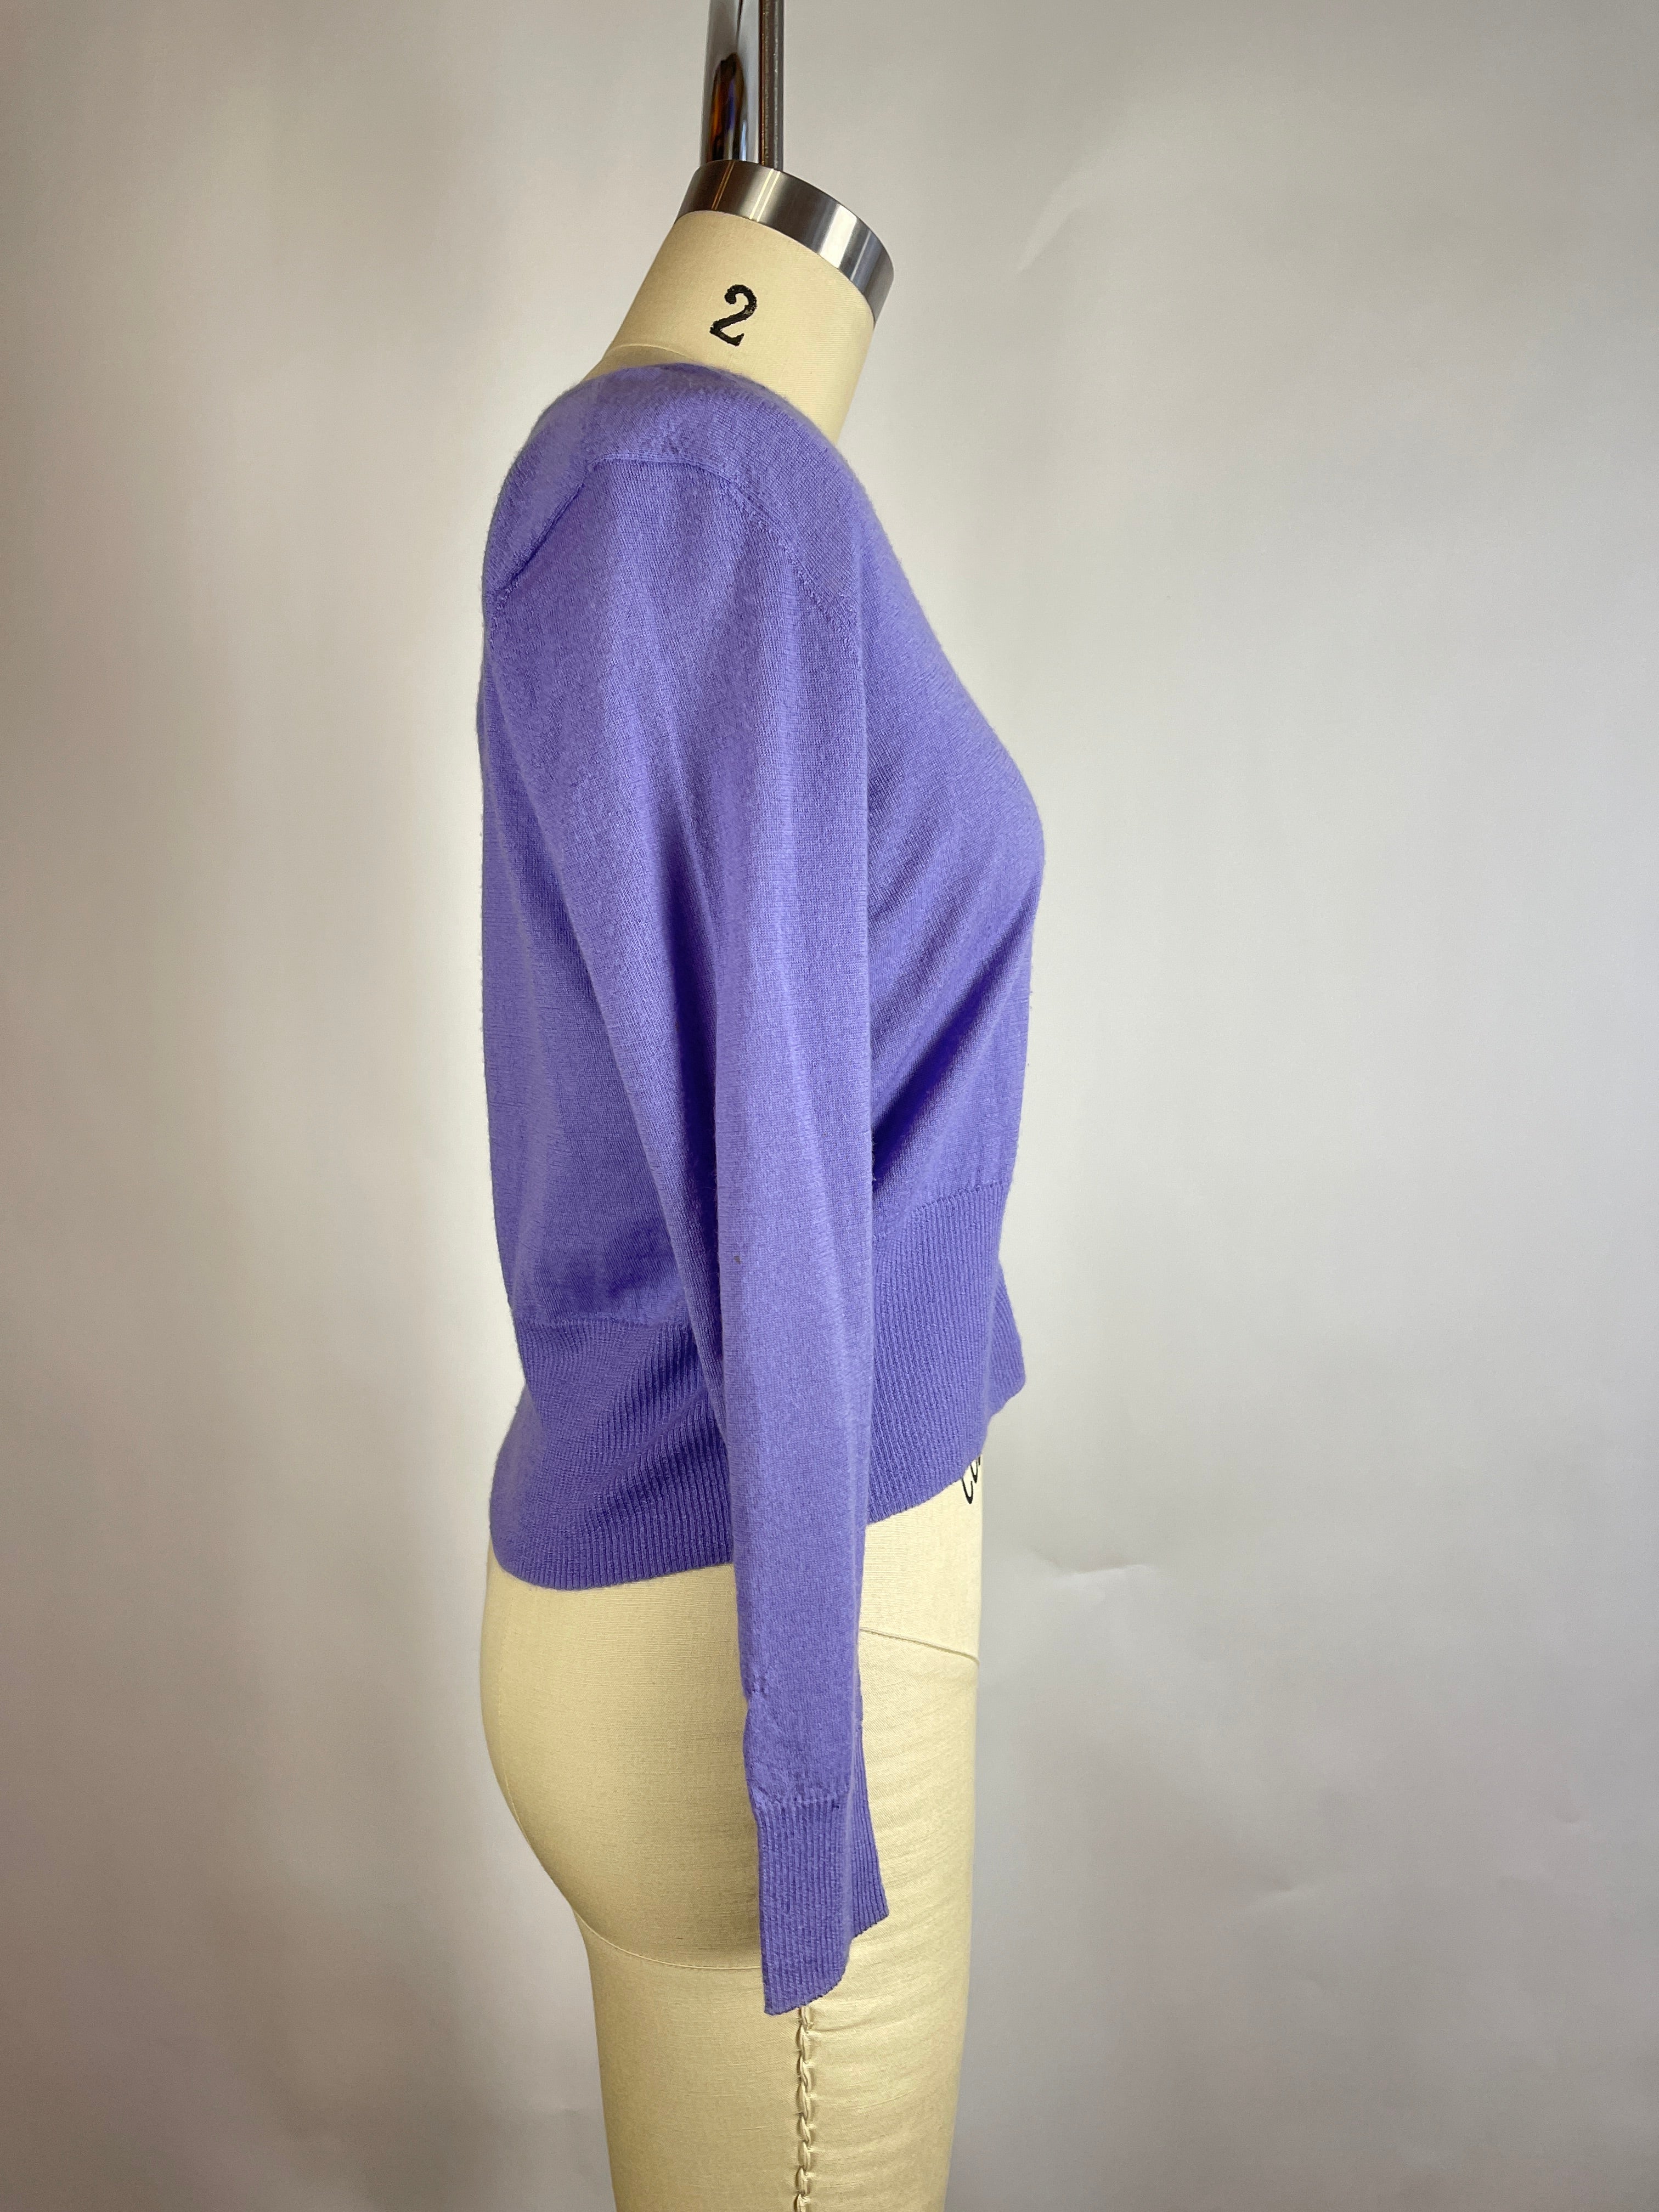 Vintage Purple Cashmere Top (XS/S)